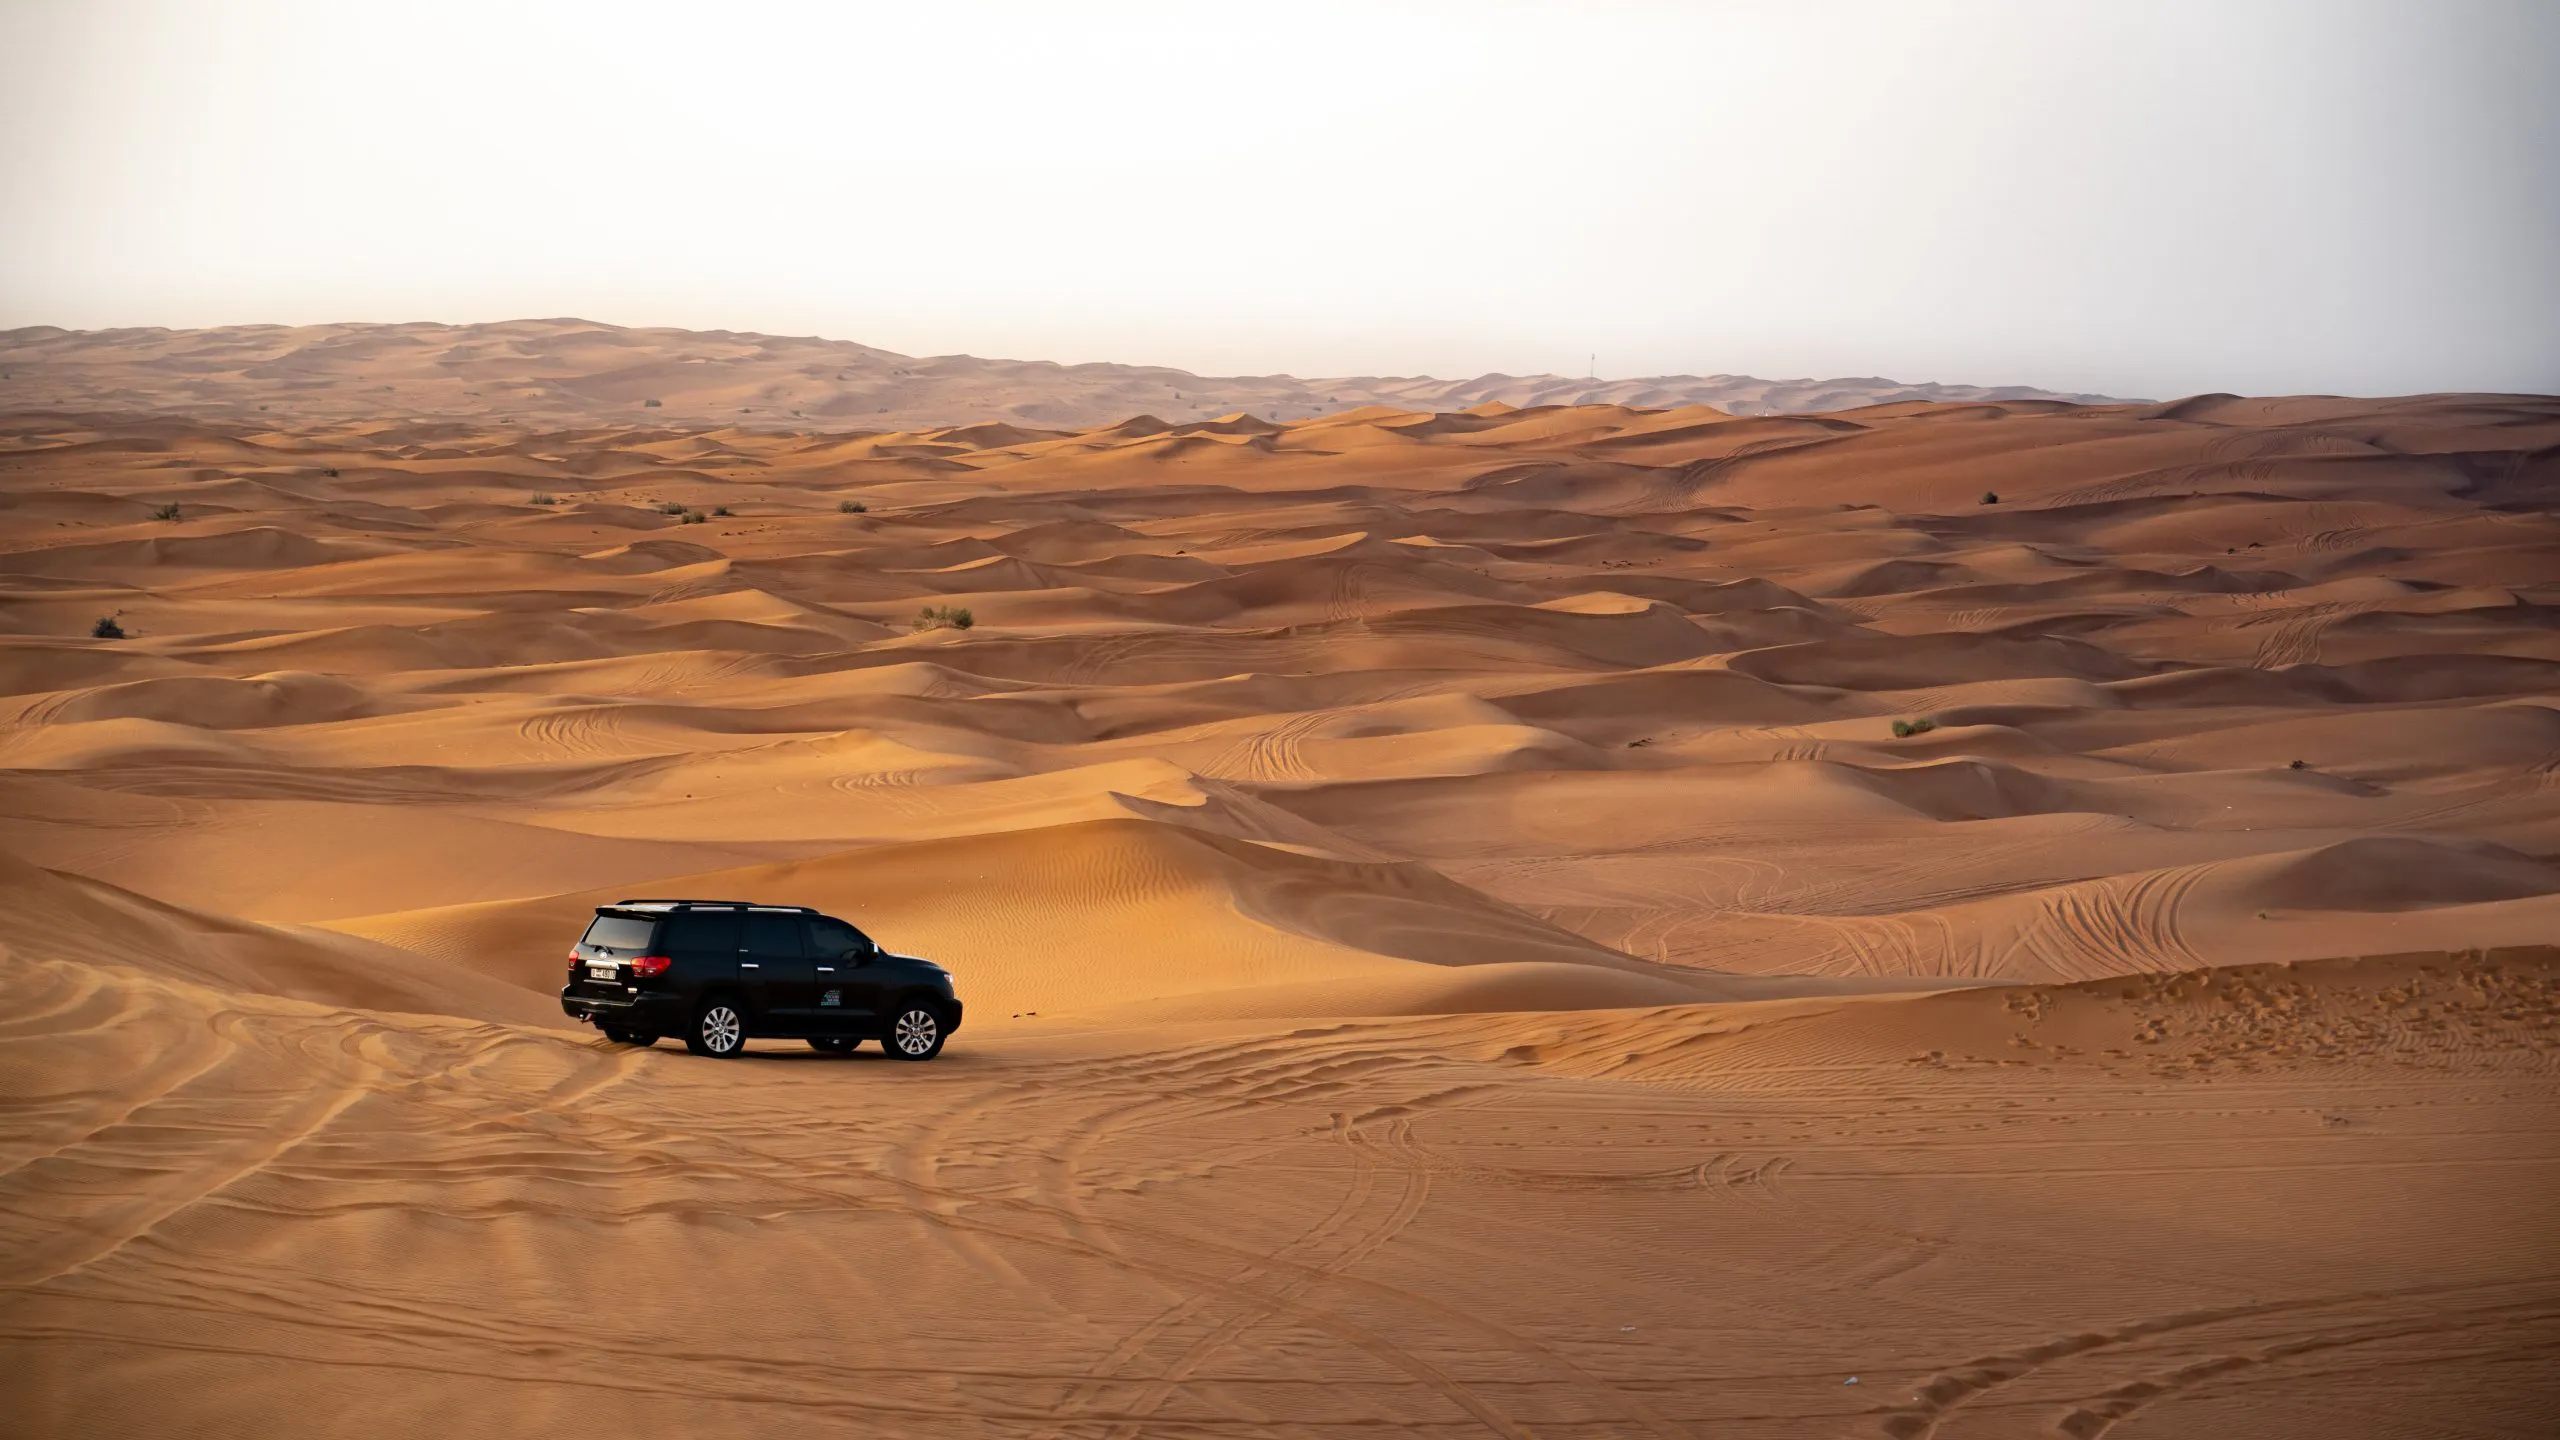 How long does desert safari last?